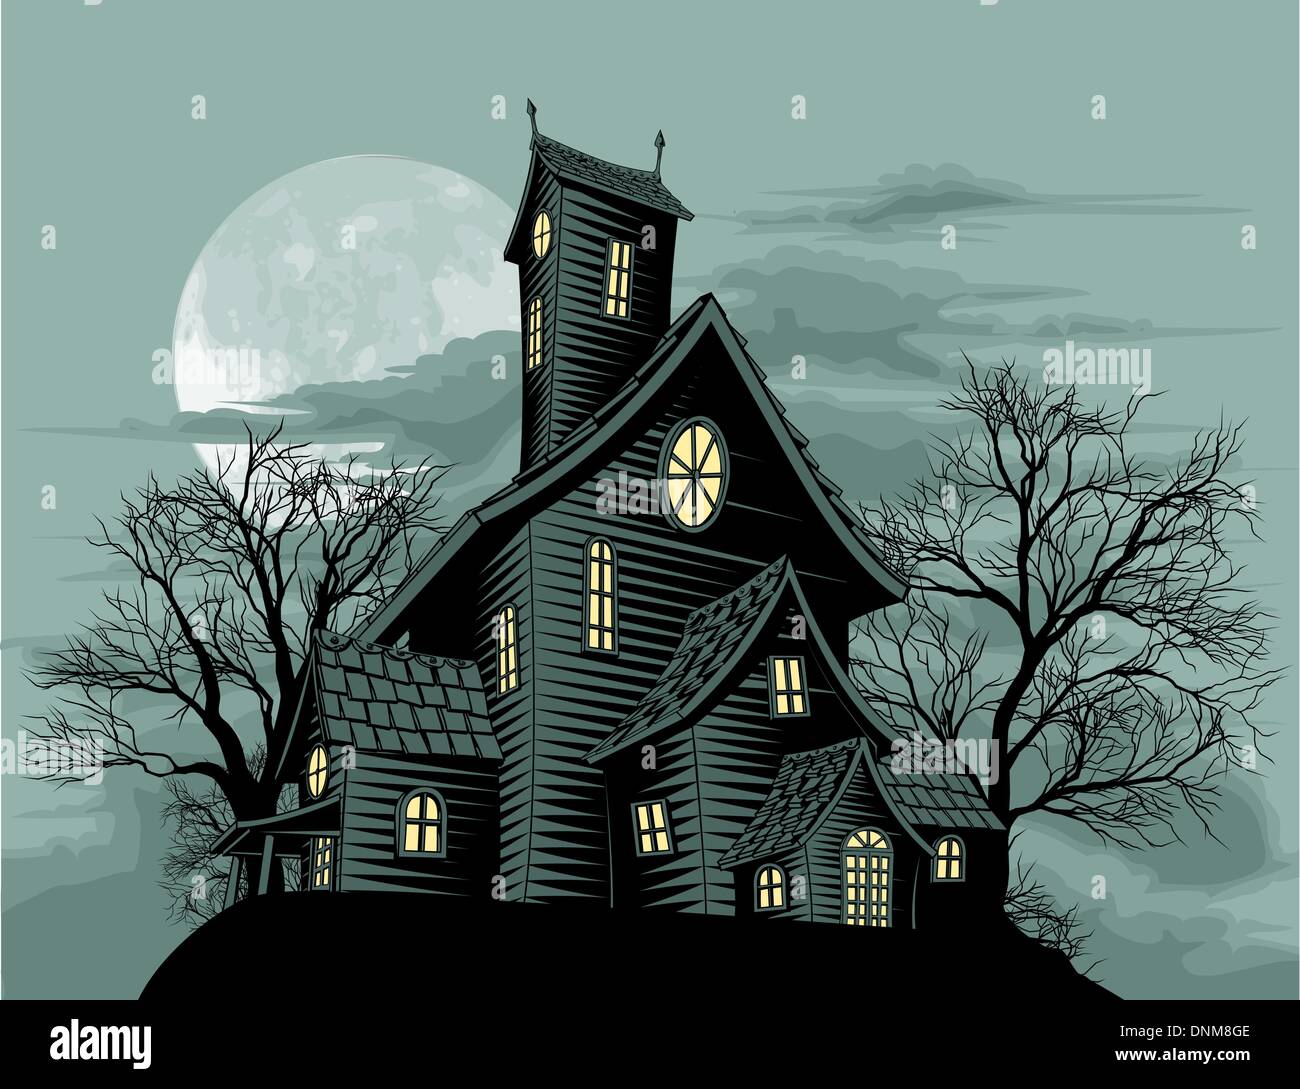 Scène d'Halloween. Illustration d'une maison fantôme hantée fantasmagorique Illustration de Vecteur